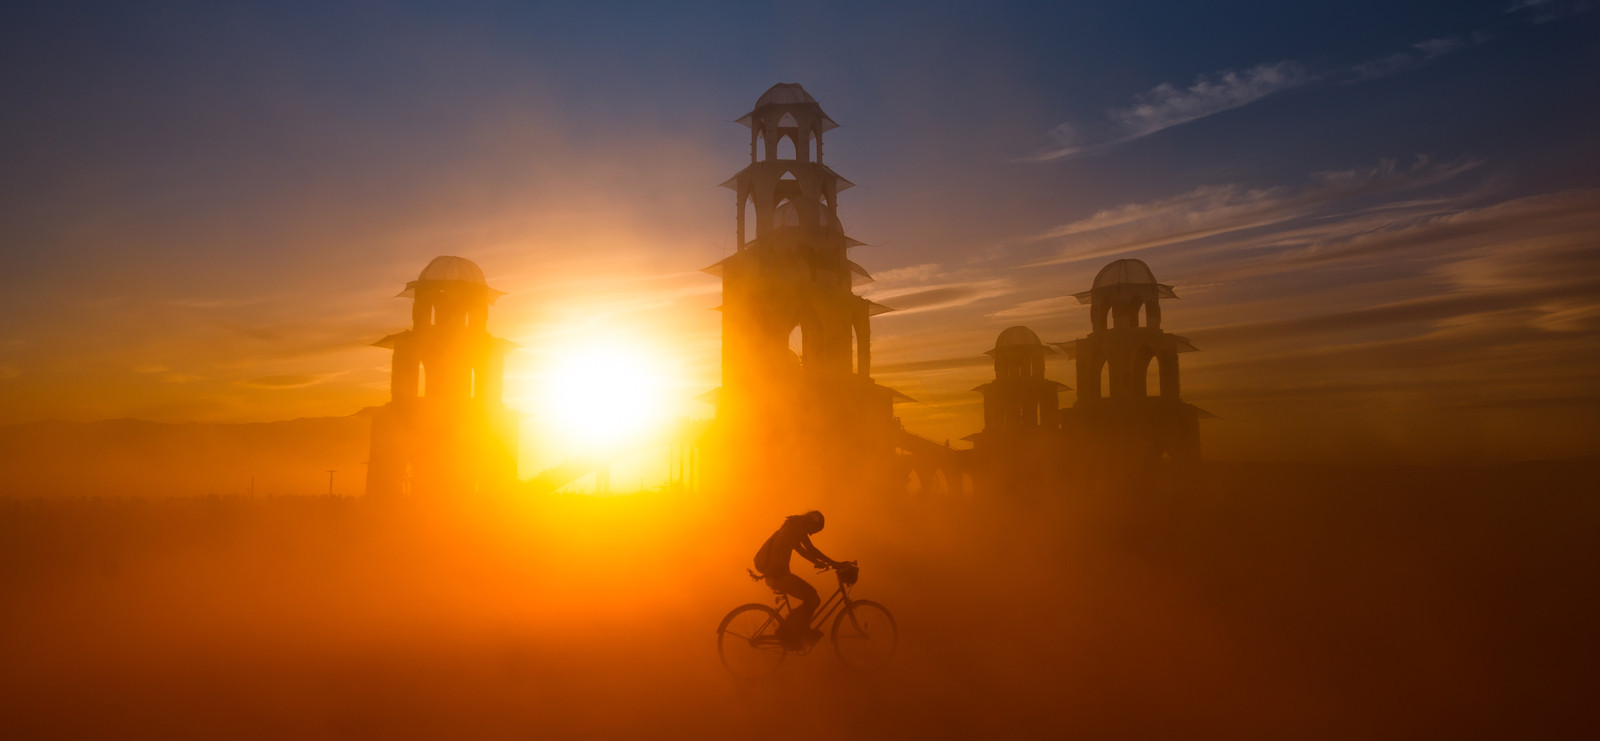 4-Burning Man 2014